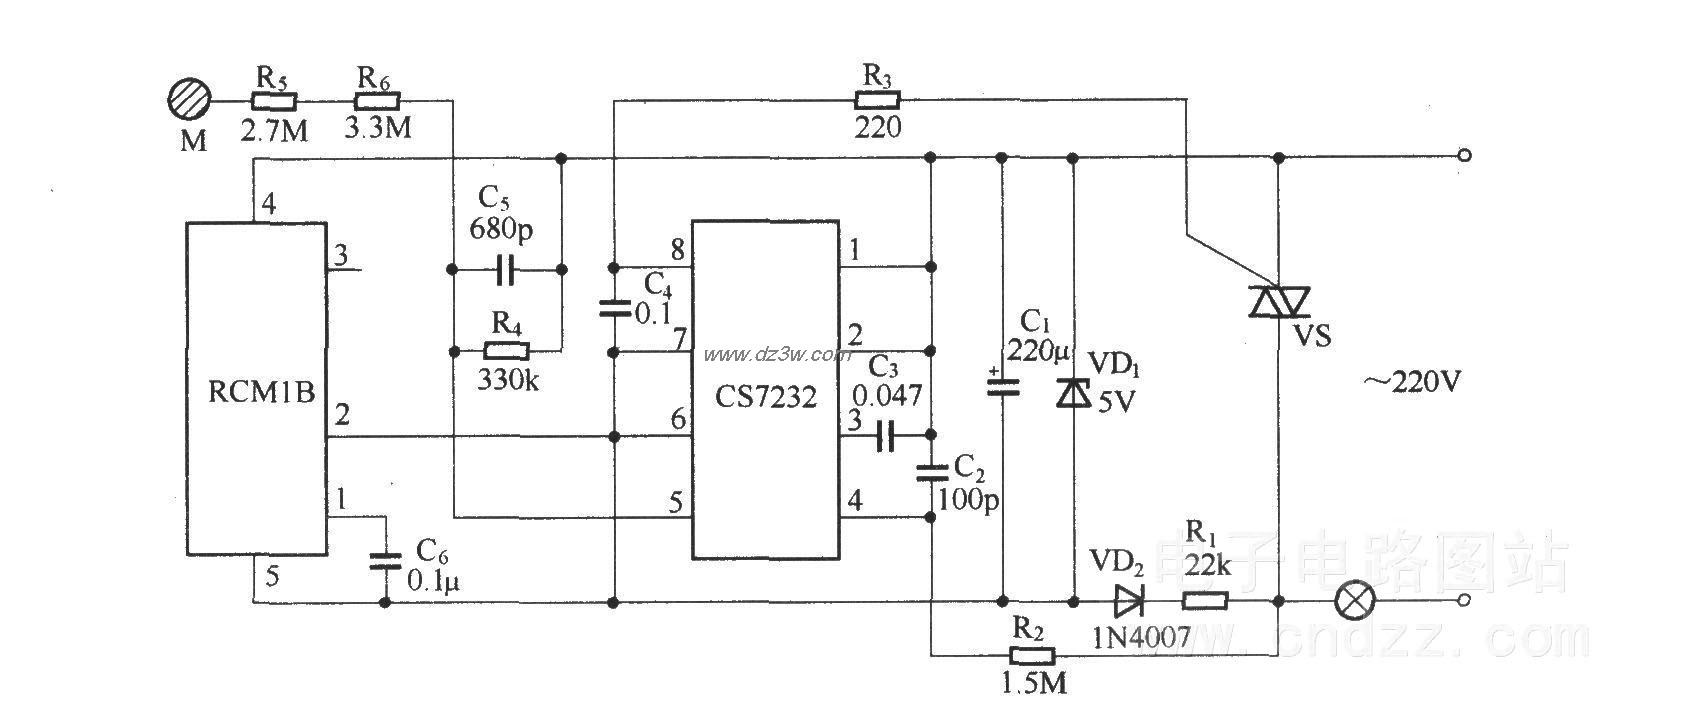 無線遙控／觸摸調光電路(RCM1A/RCM1B)